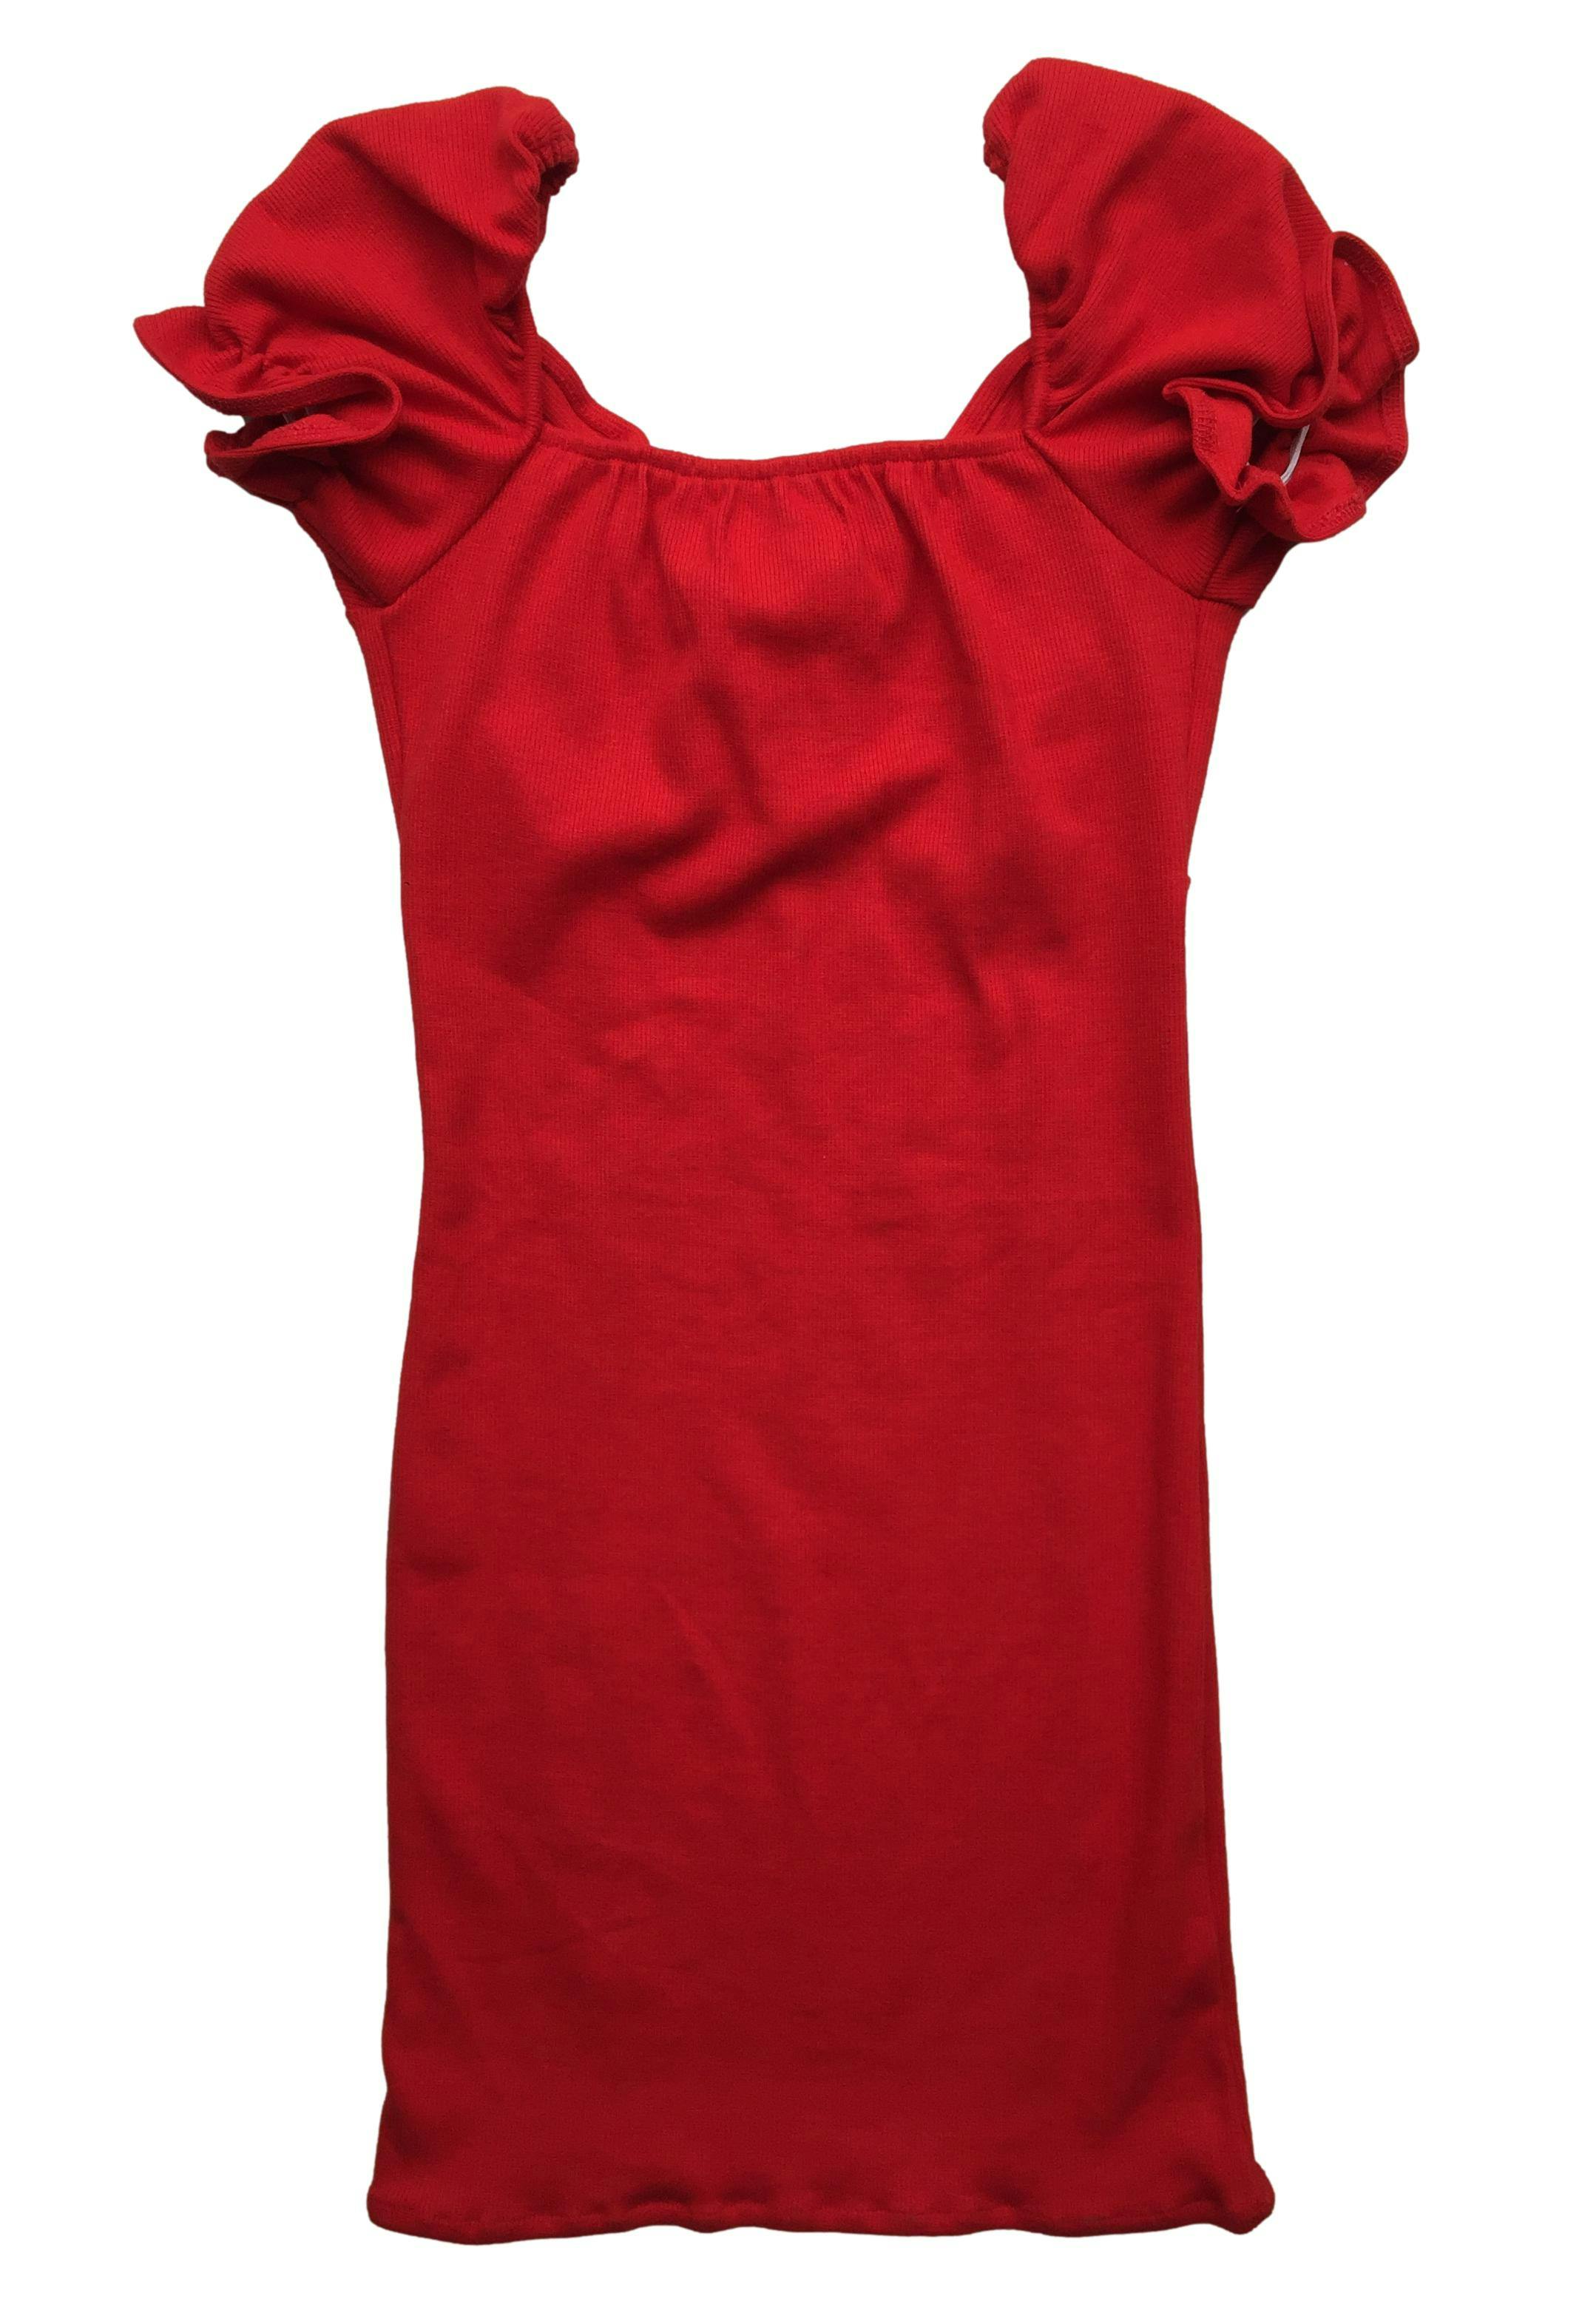 Vestido rojo acanalado mangas con vuelo y elástico, stretch. Busto: 66cm, Largo: 76cm. Nuevo con etiqueta